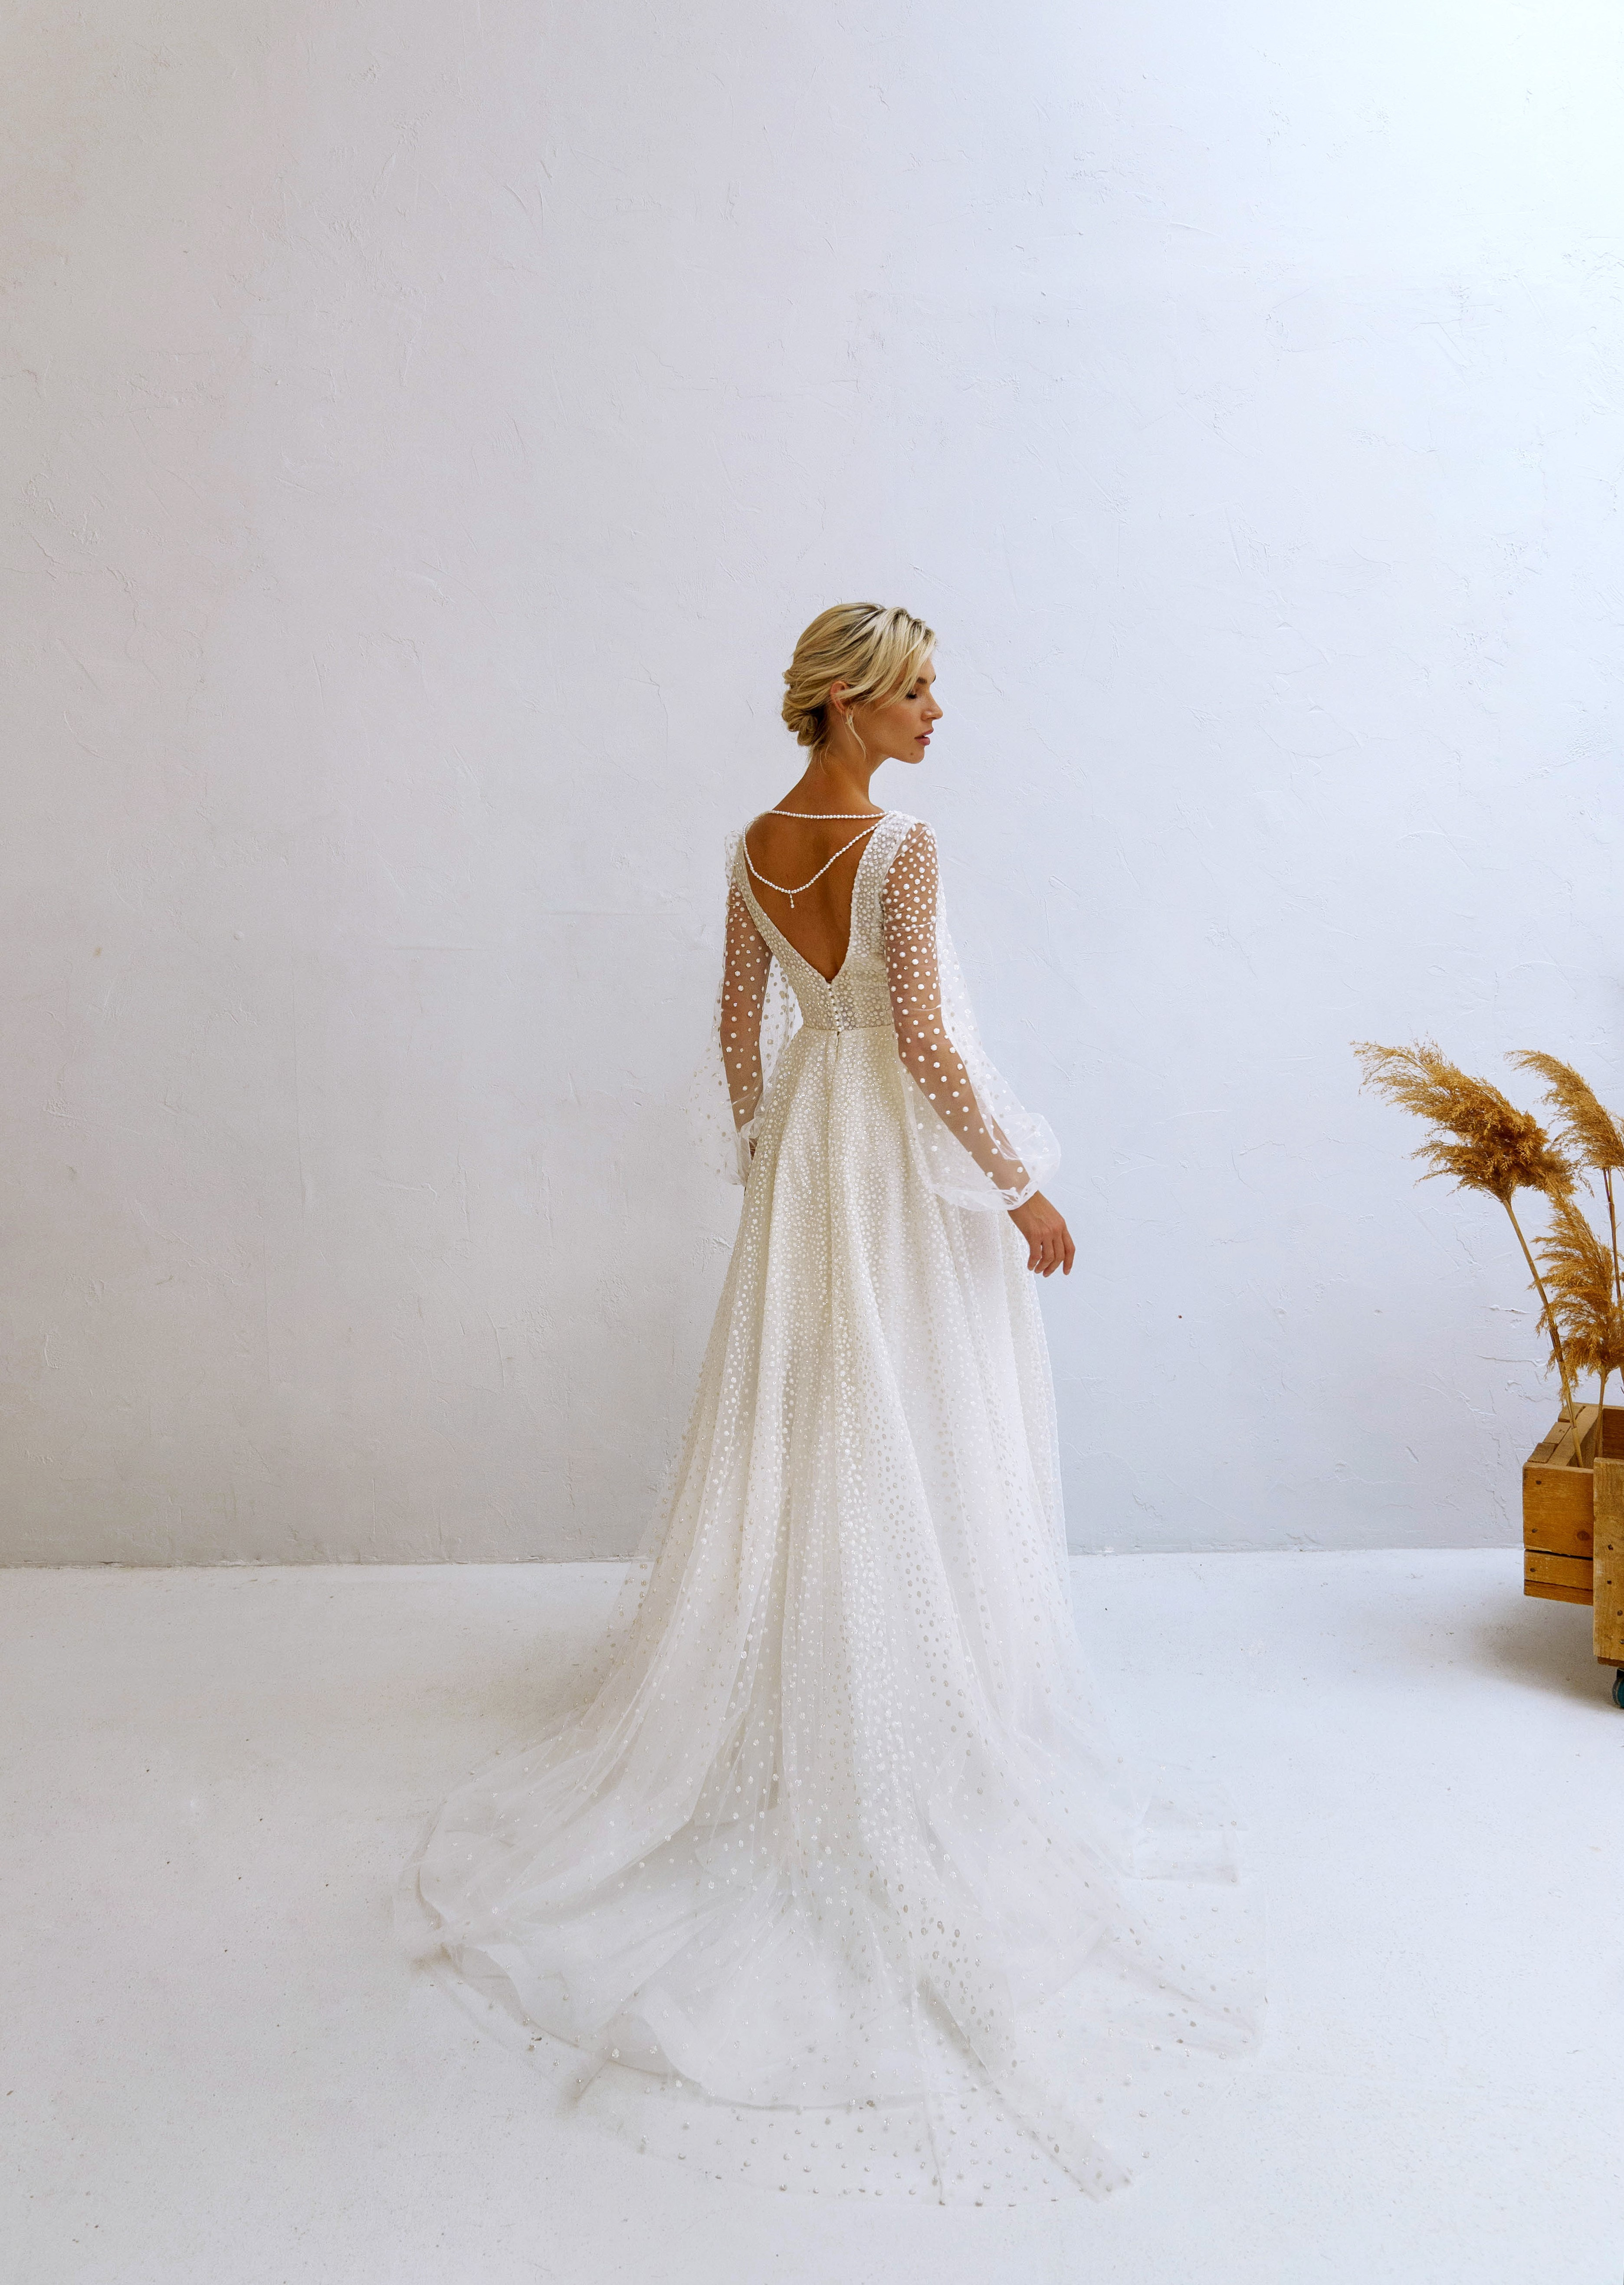 Купить свадебное платье «Индис» Наталья Романова из коллекции Блаш Бриз 2022 года в салоне «Мэри Трюфель»